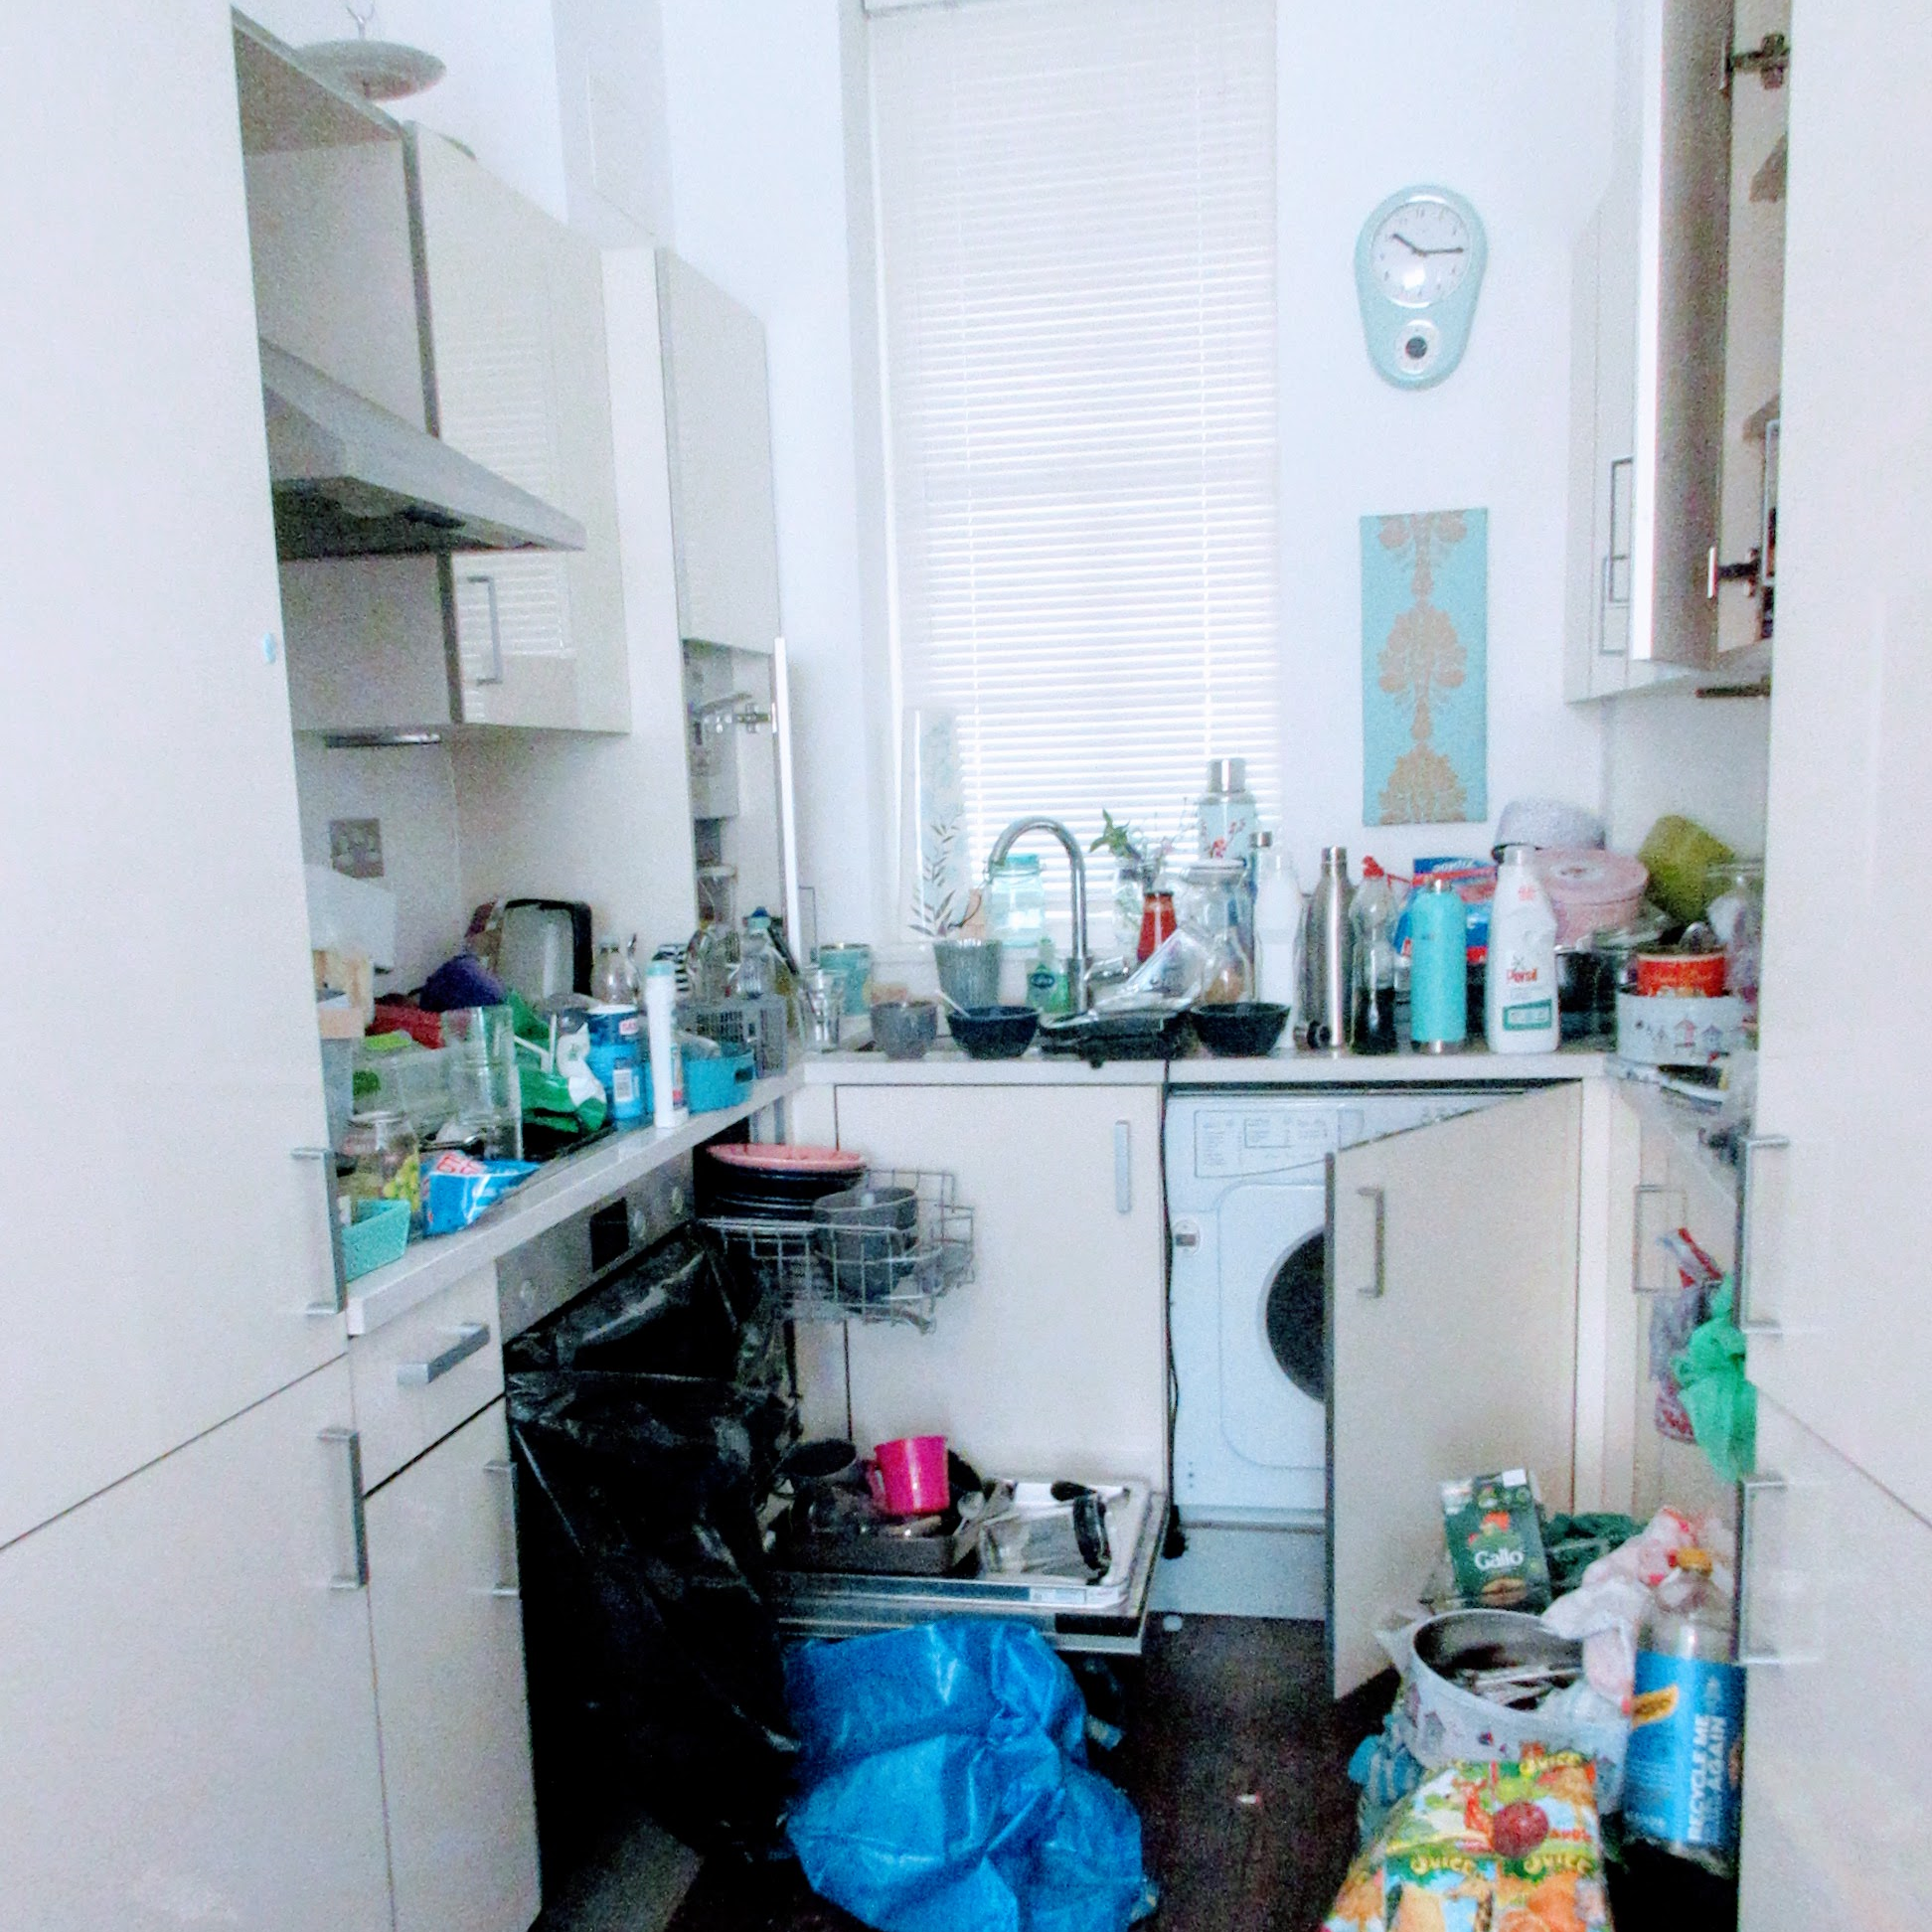 cluttered kitchen